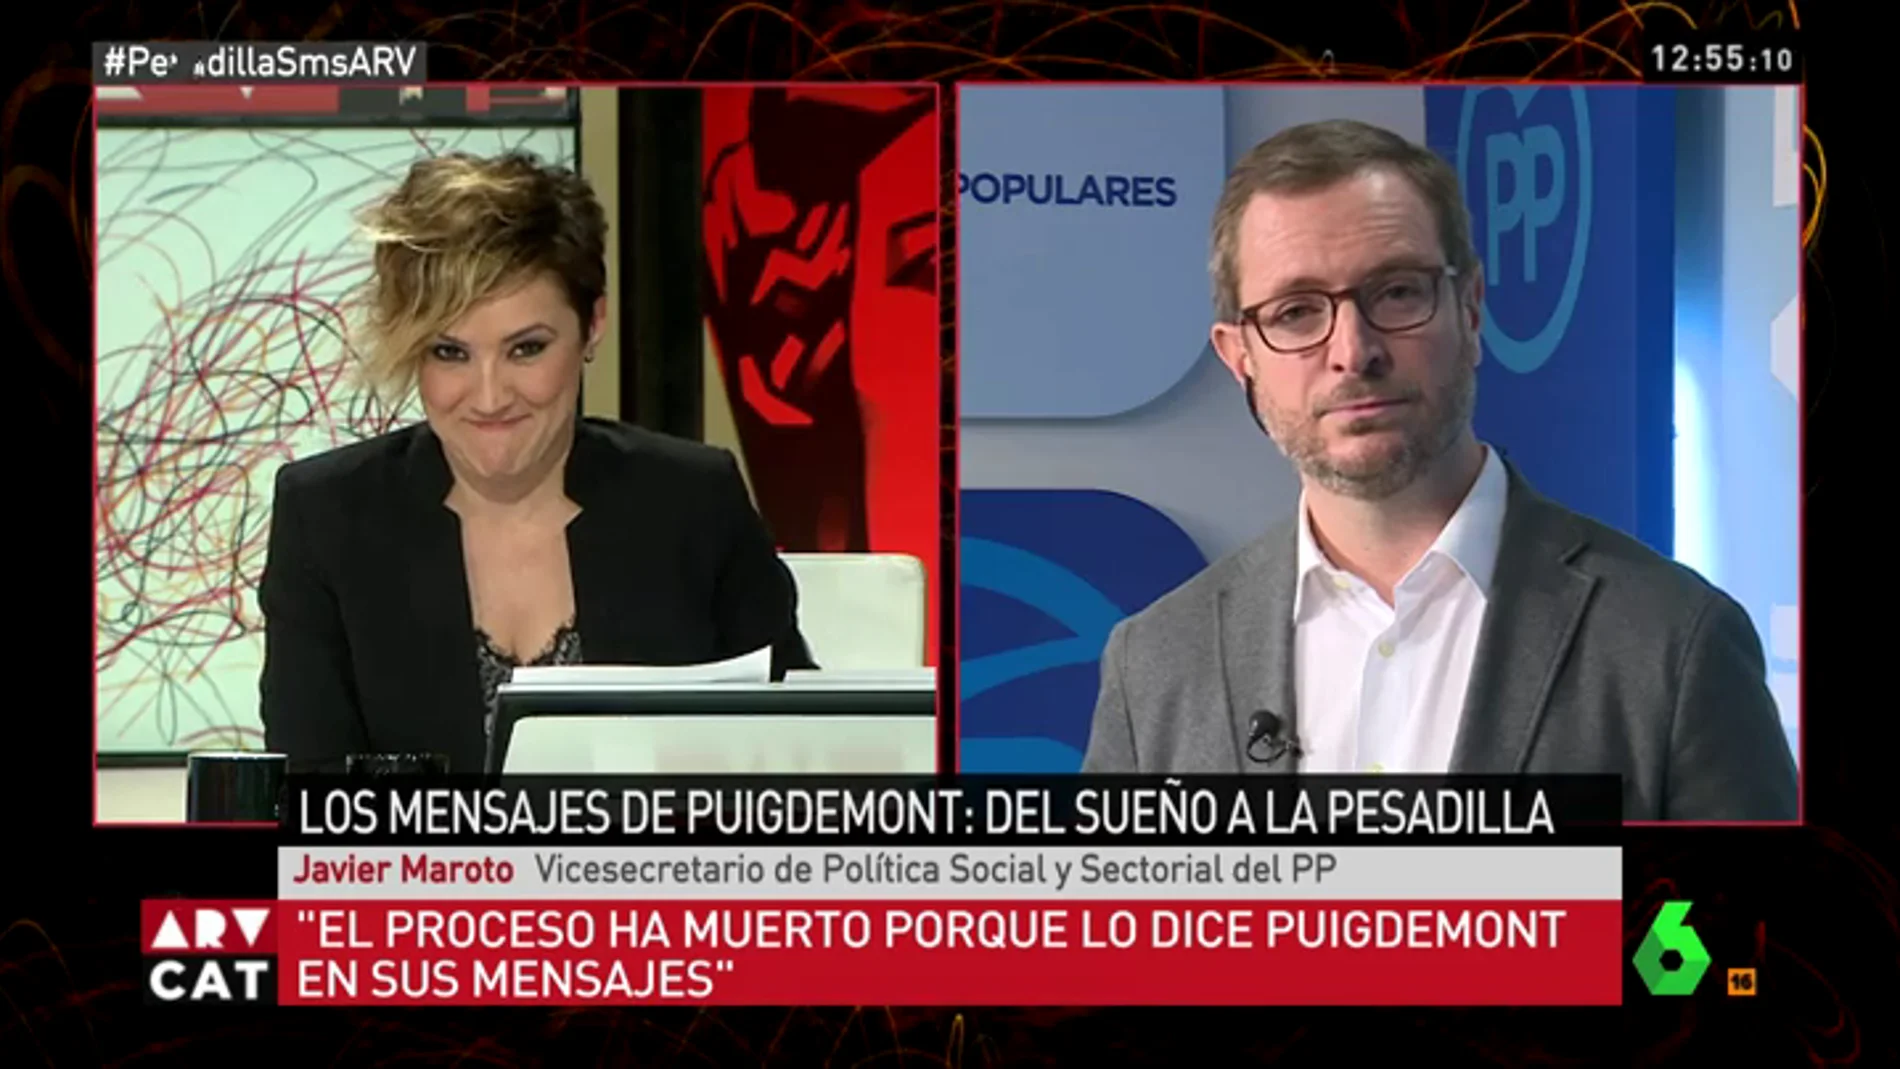 Javier Maroto no ve comparable los SMS de Puigdemont con el "se fuerte" a Bárcenas: "No me pregunte sobre eso"